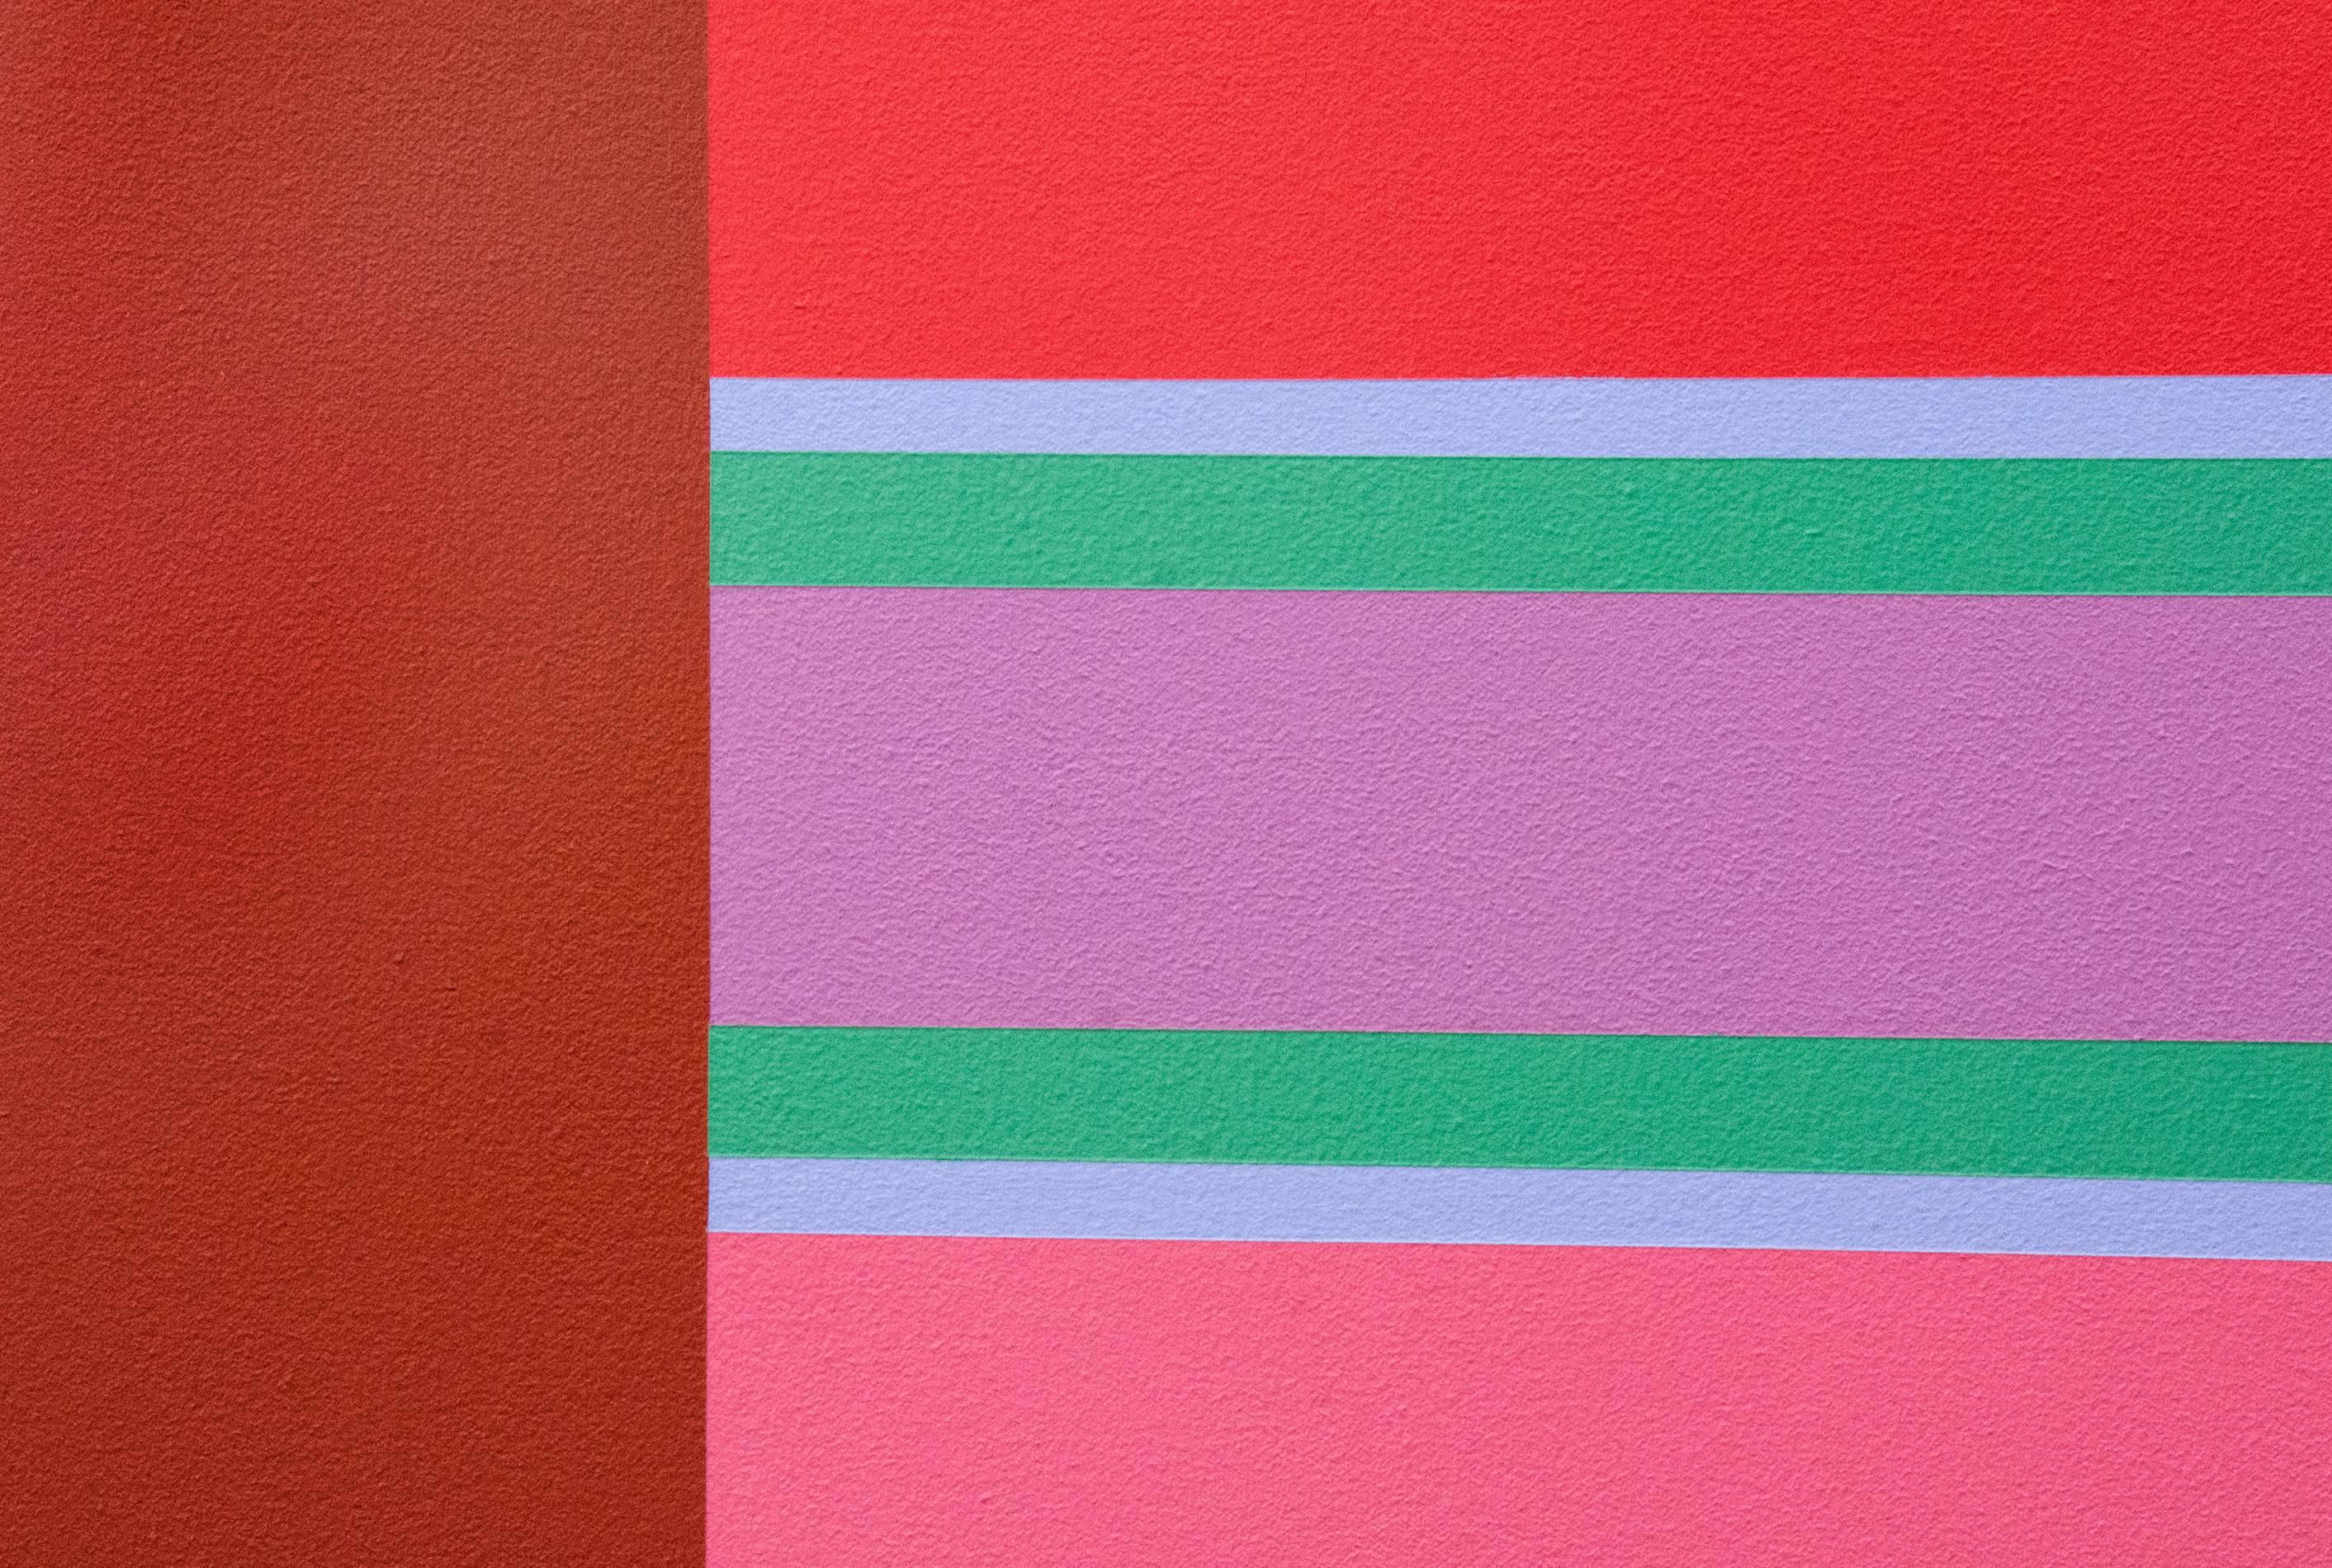 Oasis 4/4 - abstraction géométrique vibrante et colorée, moderniste, acrylique sur toile - Géométrique abstrait Painting par Burton Kramer